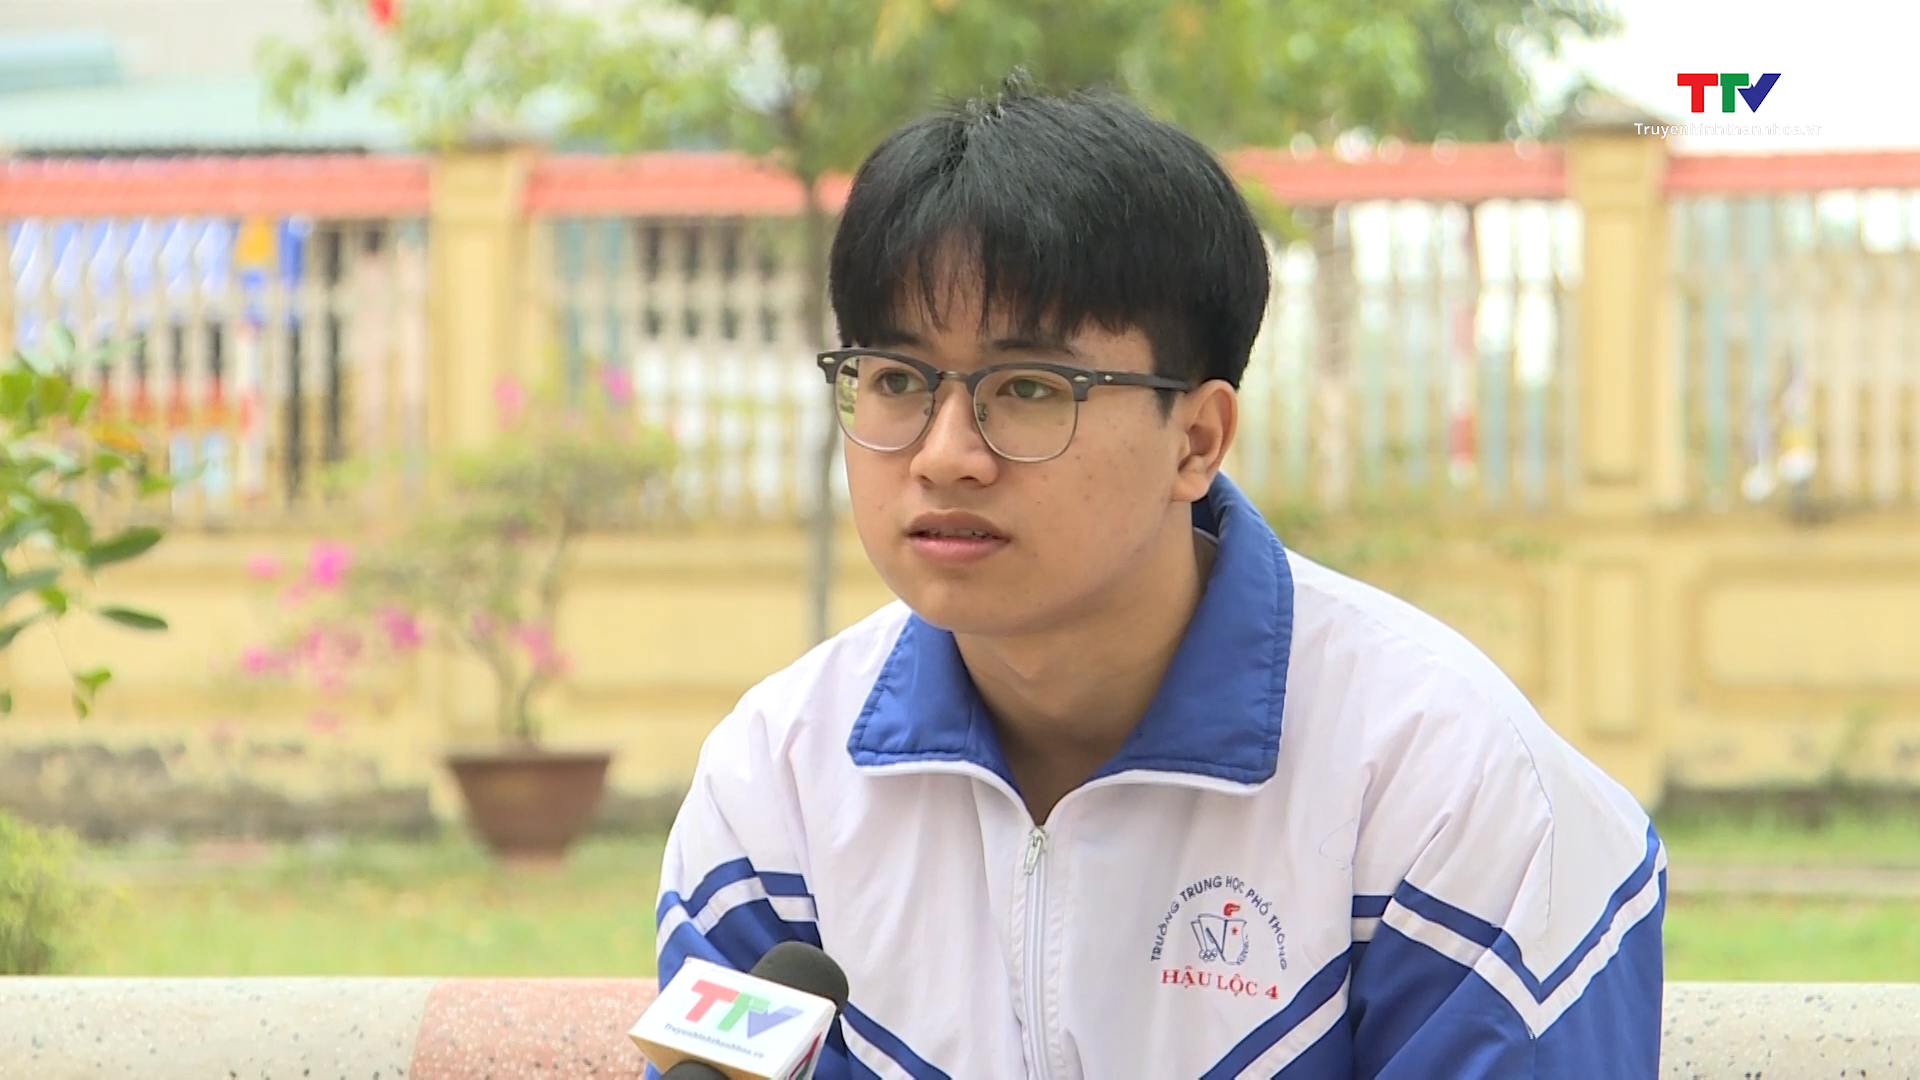 Trường Trung học phổ thông Hậu Lộc 4 lần đầu tiên có học sinh đạt giải quốc gia - Ảnh 5.